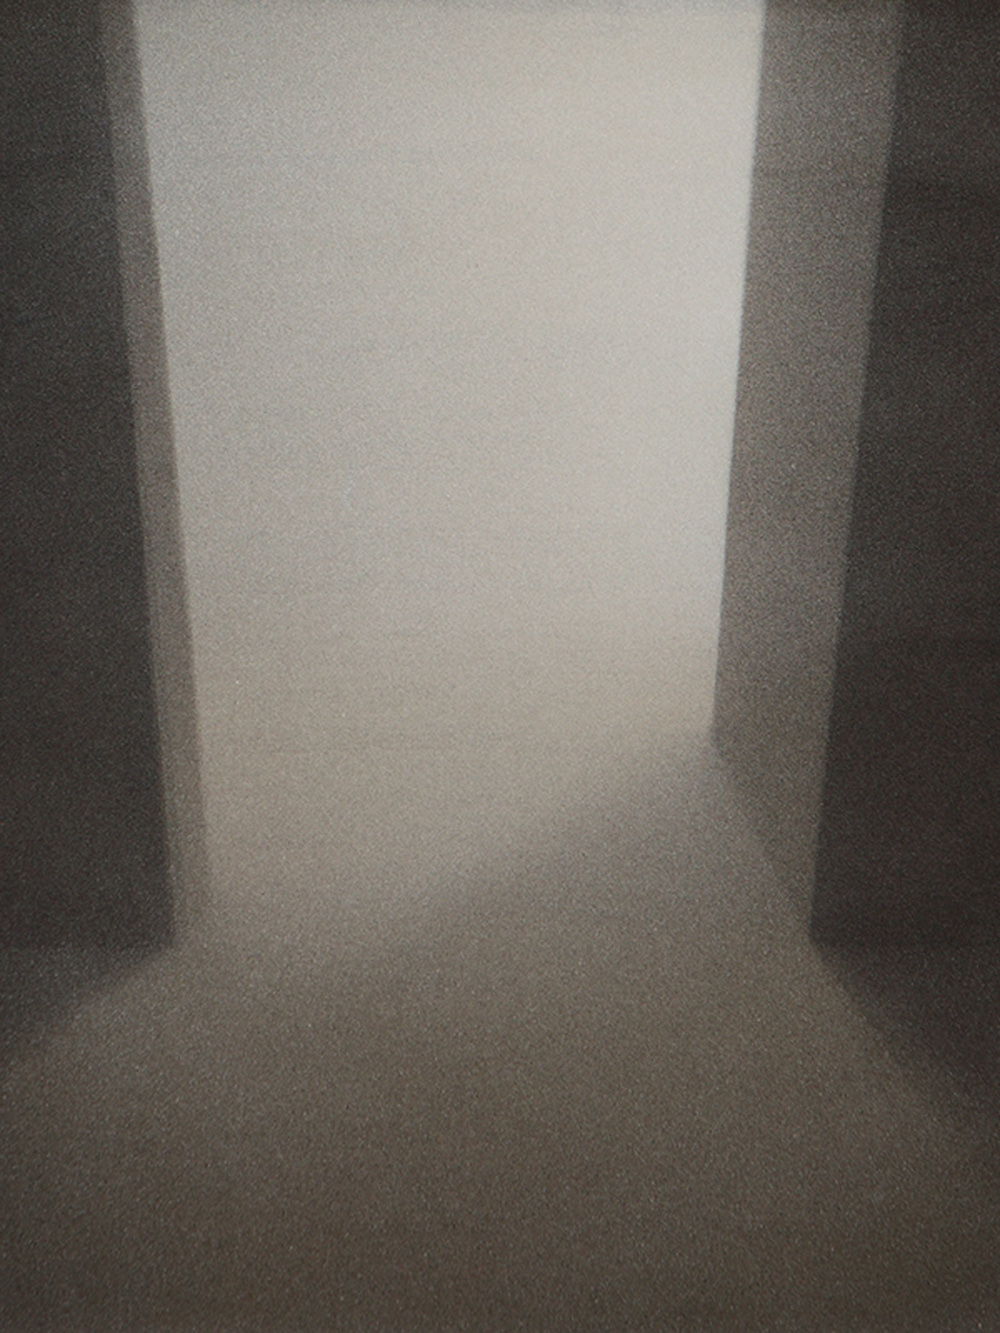 Senza titolo, 2011, tempera acrilica su carta montata su tela, cm 50x41,8